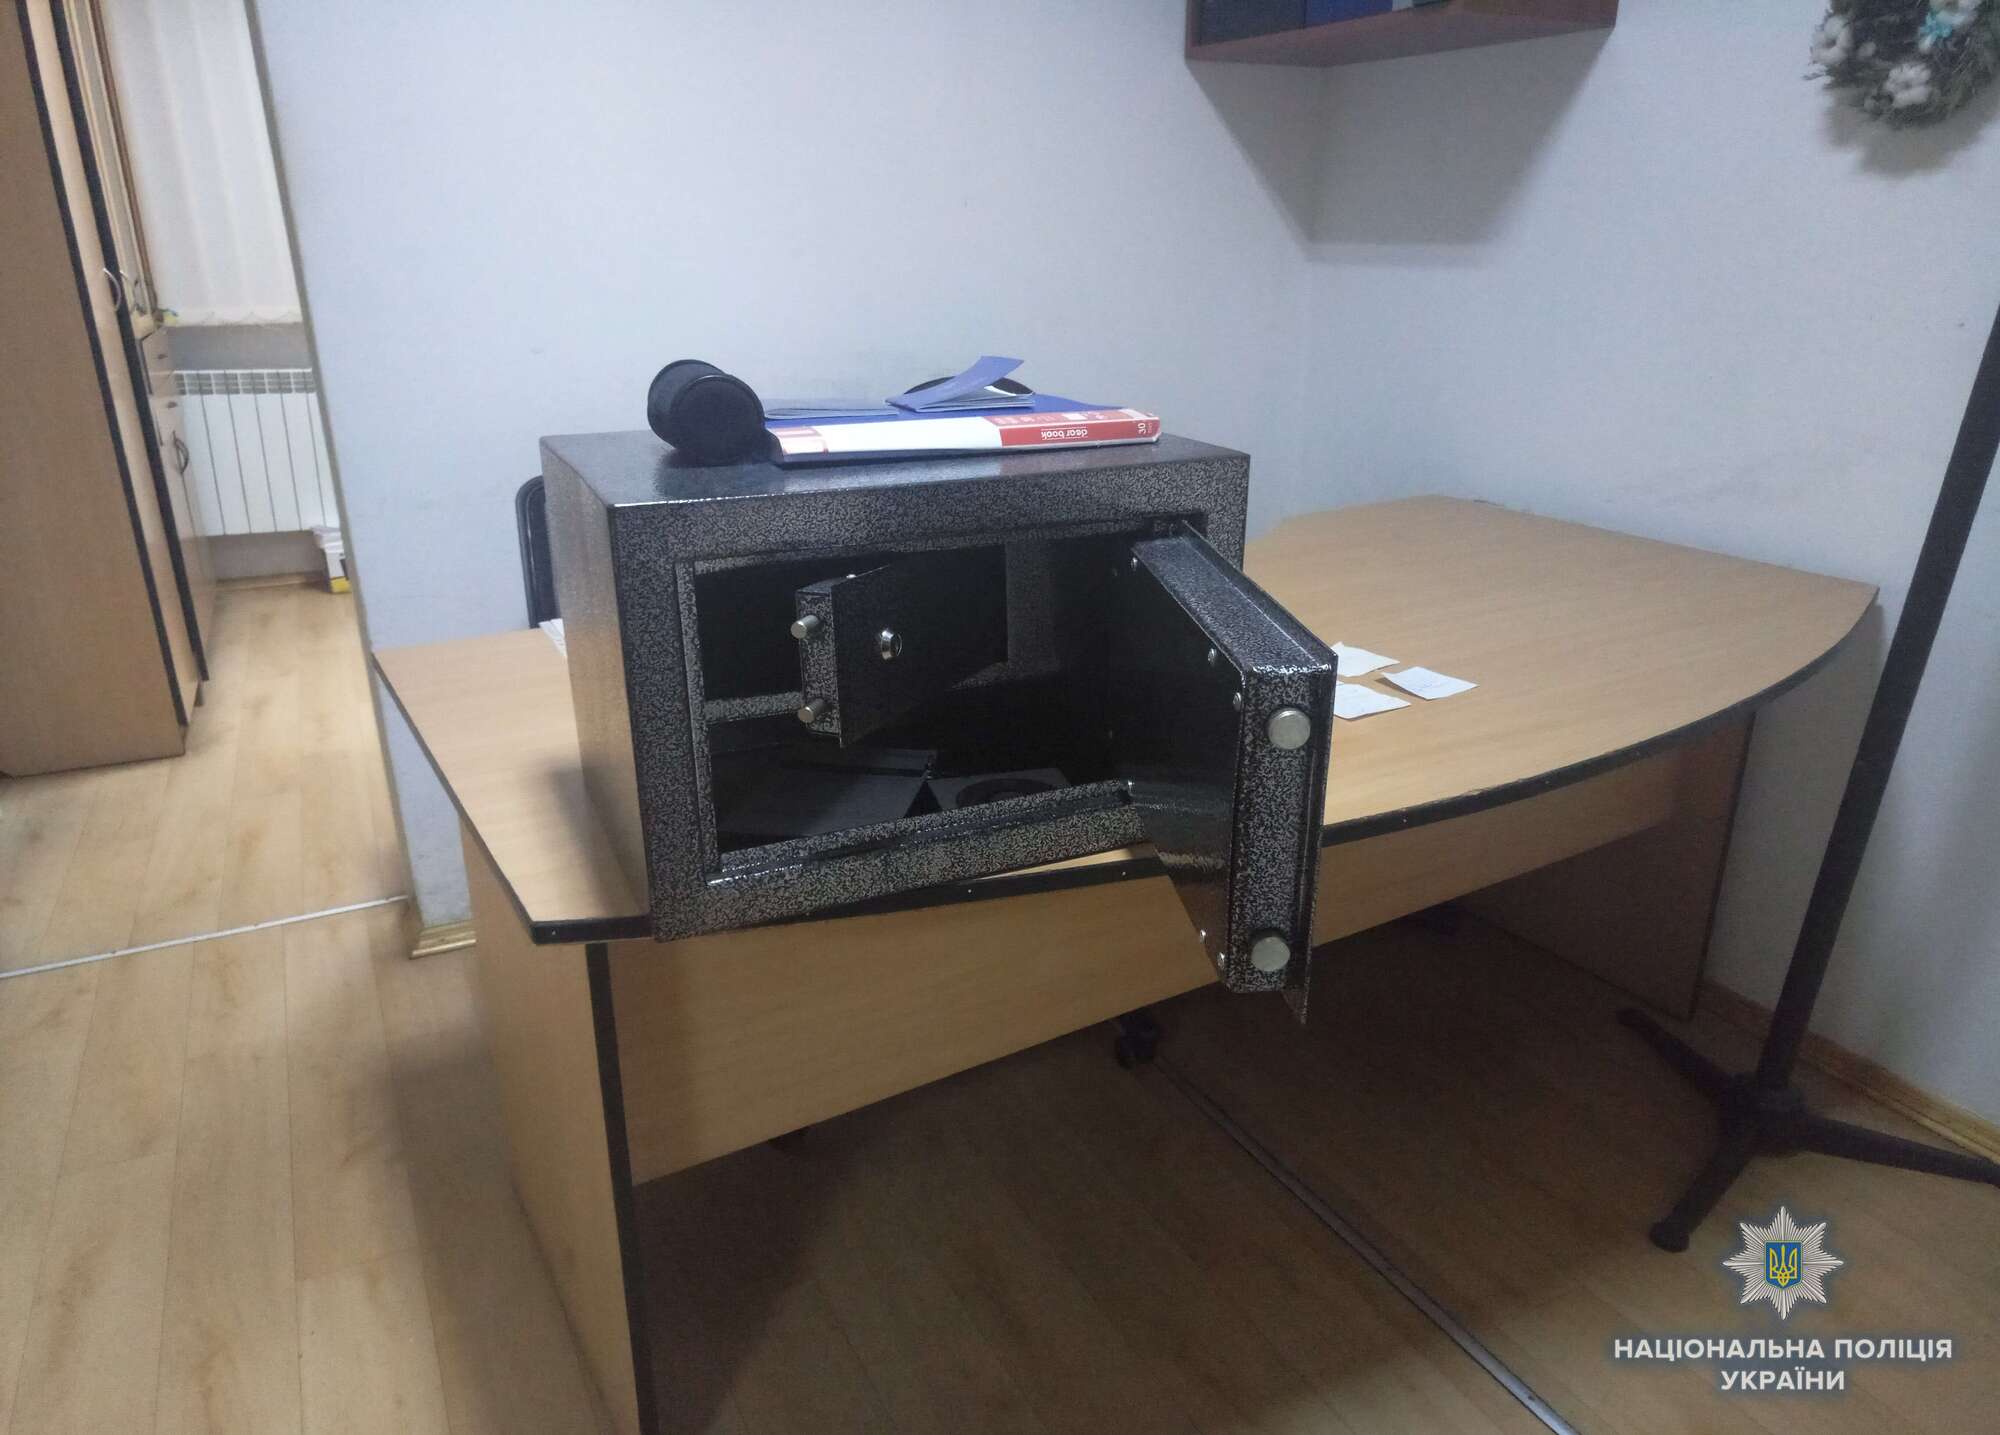 Зв'язали охоронця і зламали сейфи: в Києві сталося збройне пограбування